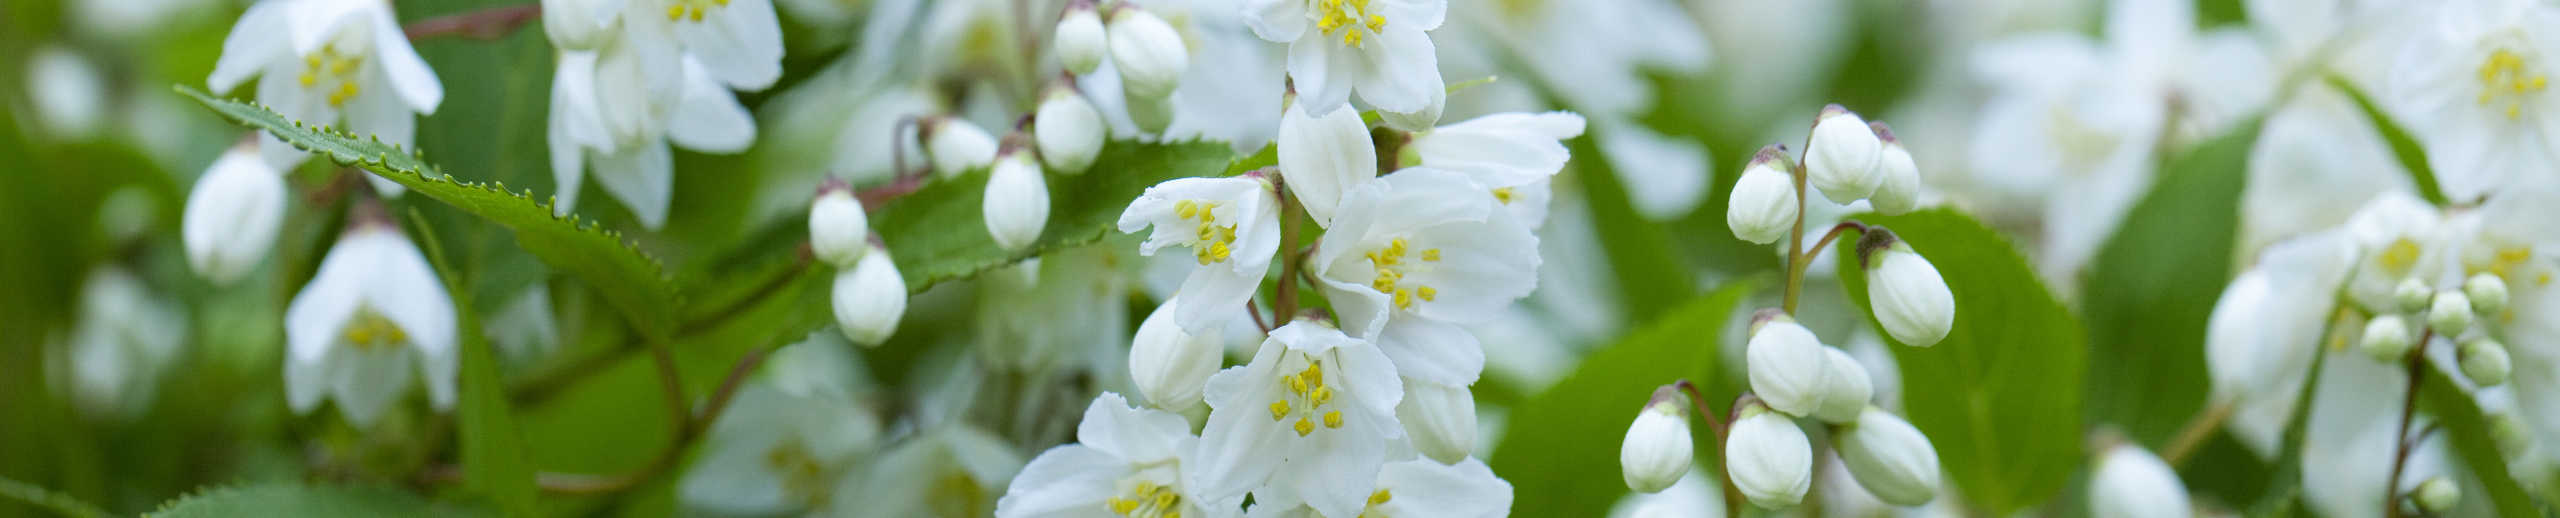 Pflanze mit weißen Blüten in Nahaufnahme